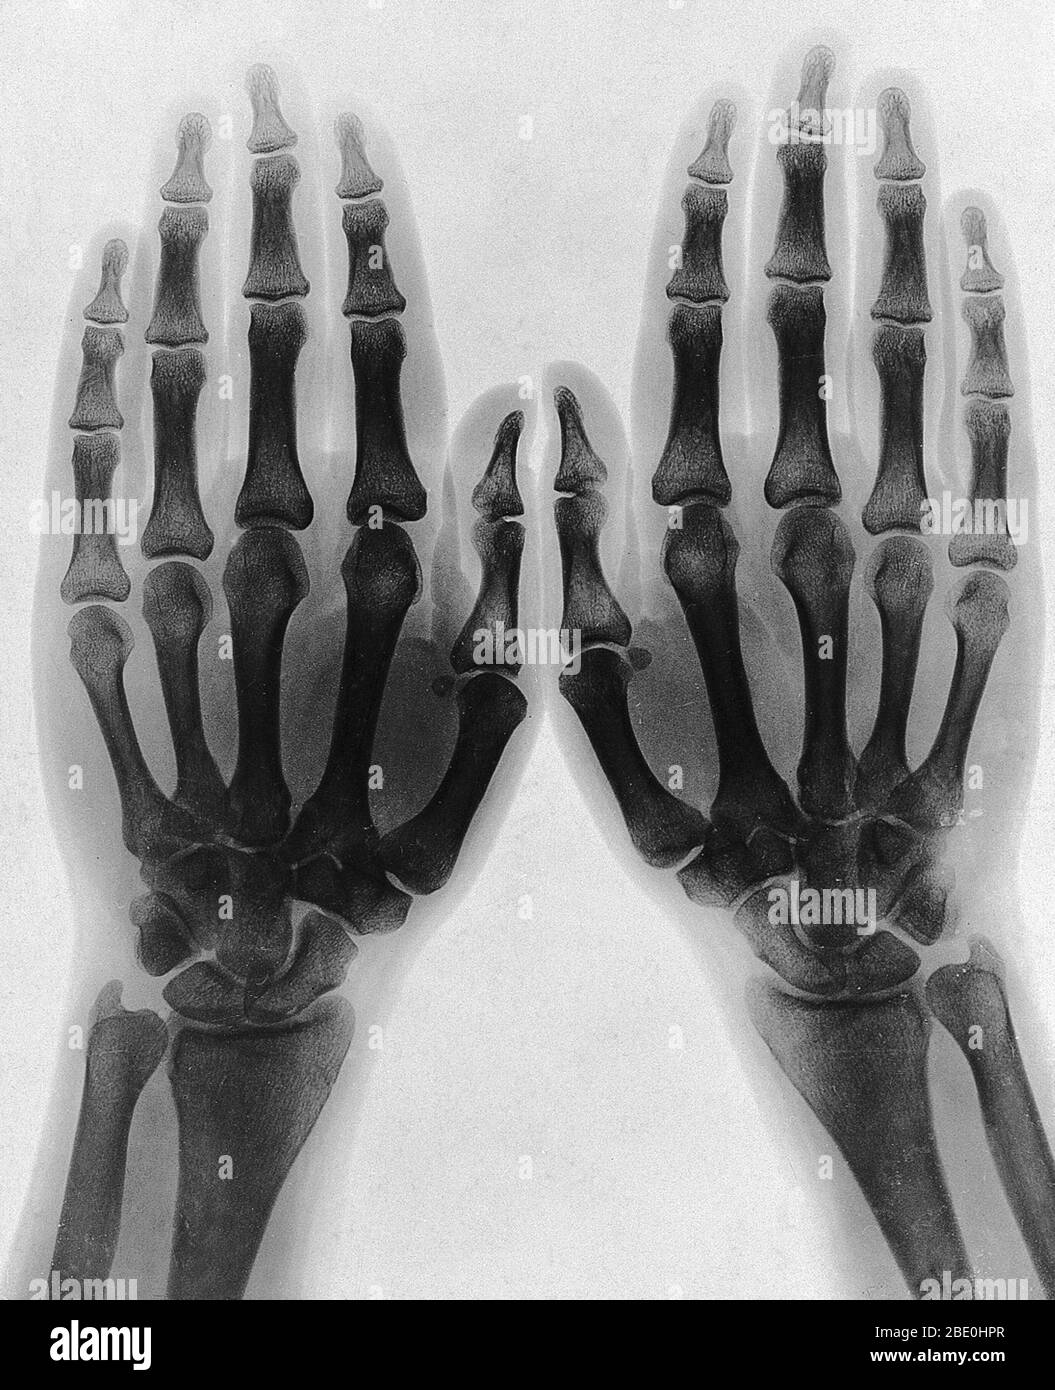 Deux mains, vues par rayons X. PhotoPrint de la radiographie, après Sir Arthur Schuster, 1896. Le physicien allemand Wilhelm Rontgen est généralement crédité comme le découvreur des rayons X en 1895, parce qu'il a été le premier à les étudier systématiquement, bien qu'il ne soit pas le premier à avoir observé leurs effets. Il est également celui qui leur a donné le nom de 'rayons X' (signifiant une quantité inconnue) bien que beaucoup d'autres les ont appelés 'rayons Rontgen' (et les radiogrammes associés comme, 'Rontgenigrammess' pendant plusieurs décennies après leur découverte. Banque D'Images